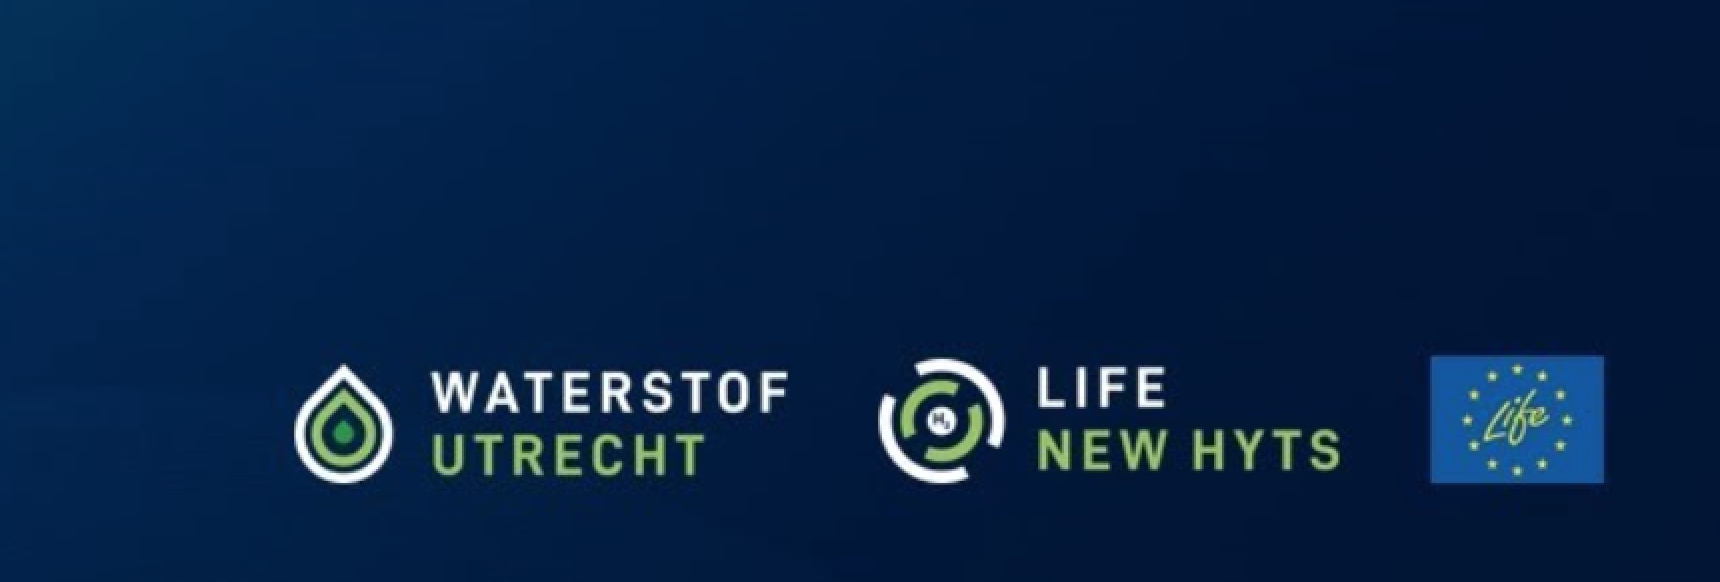 logo's waterstof Utrecht en Life NEW HYTS